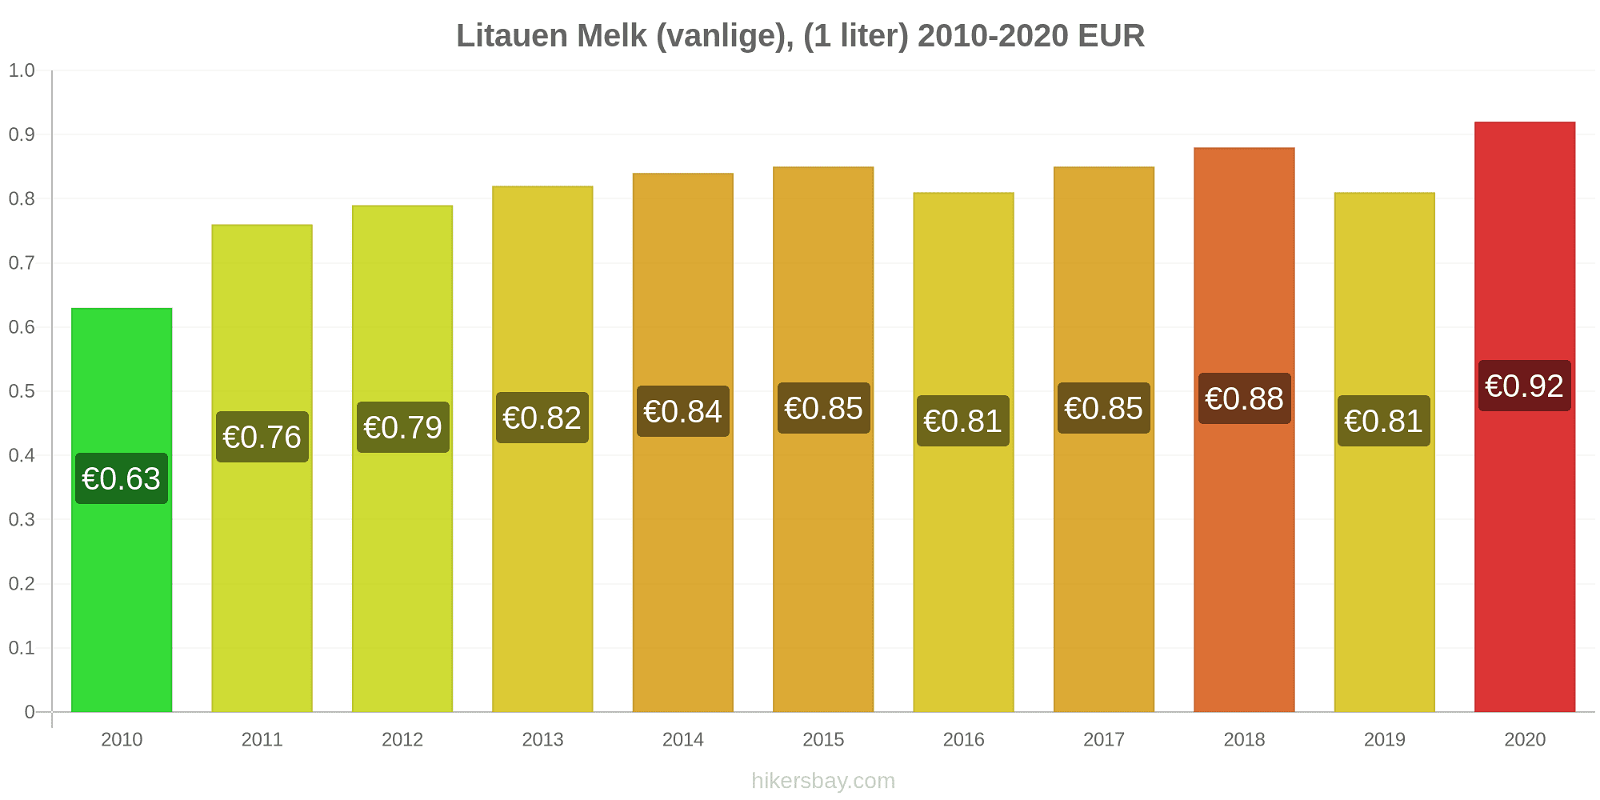 Litauen prisendringer Melk (vanlige), (1 liter) hikersbay.com